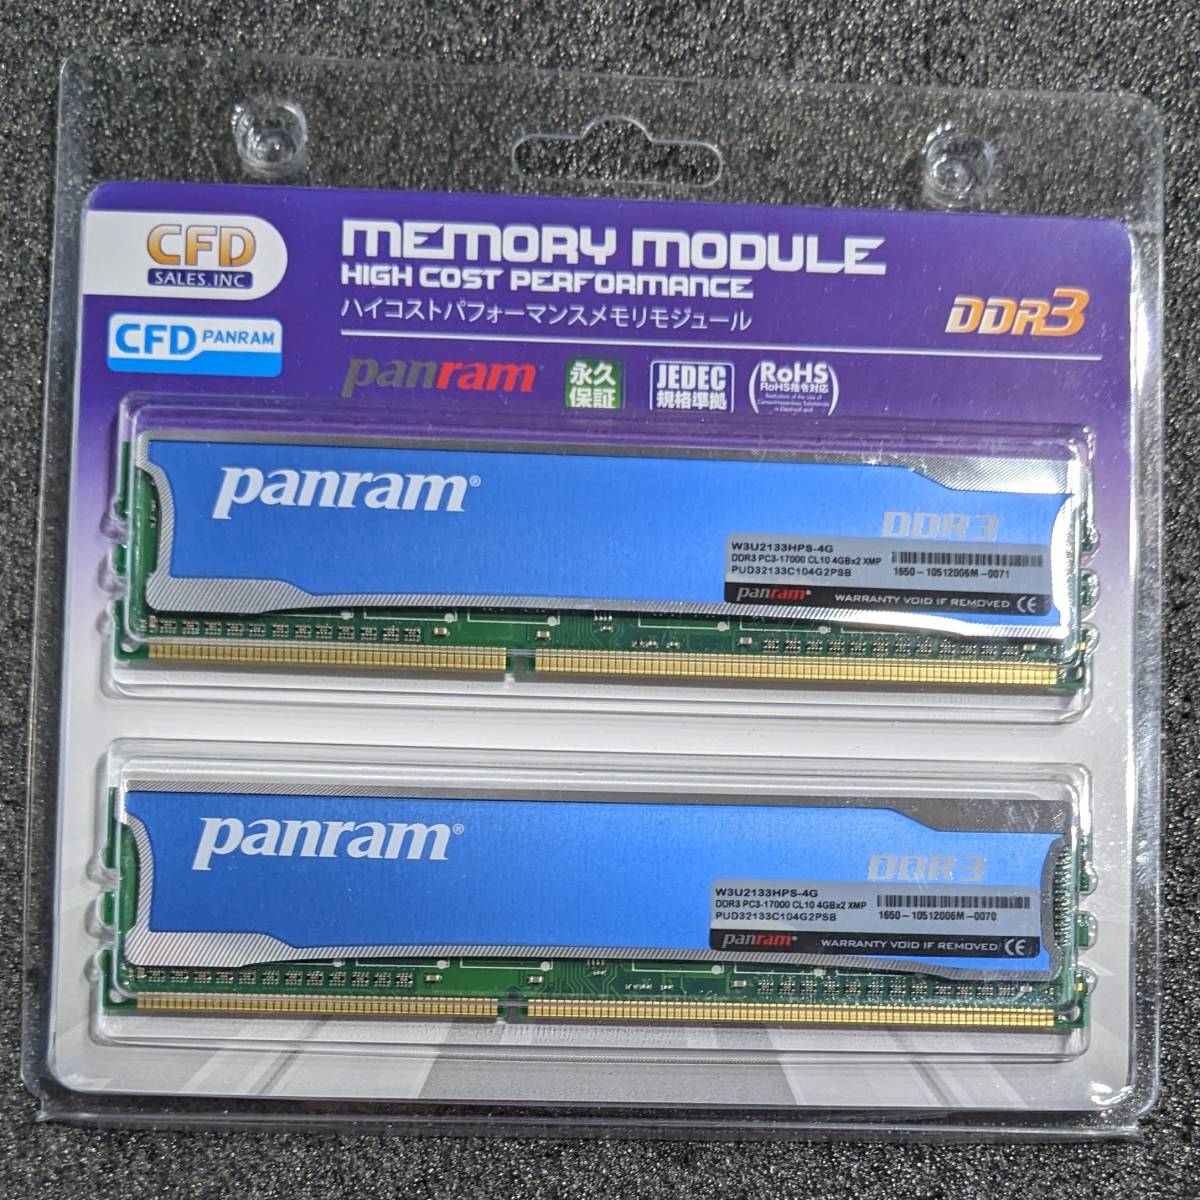 【ほぼ未使用】DDR3メモリ 8GB(4GB2枚組) CFD Panram W3U2133HPS-4G [DDR3-2133 PC3-17000]